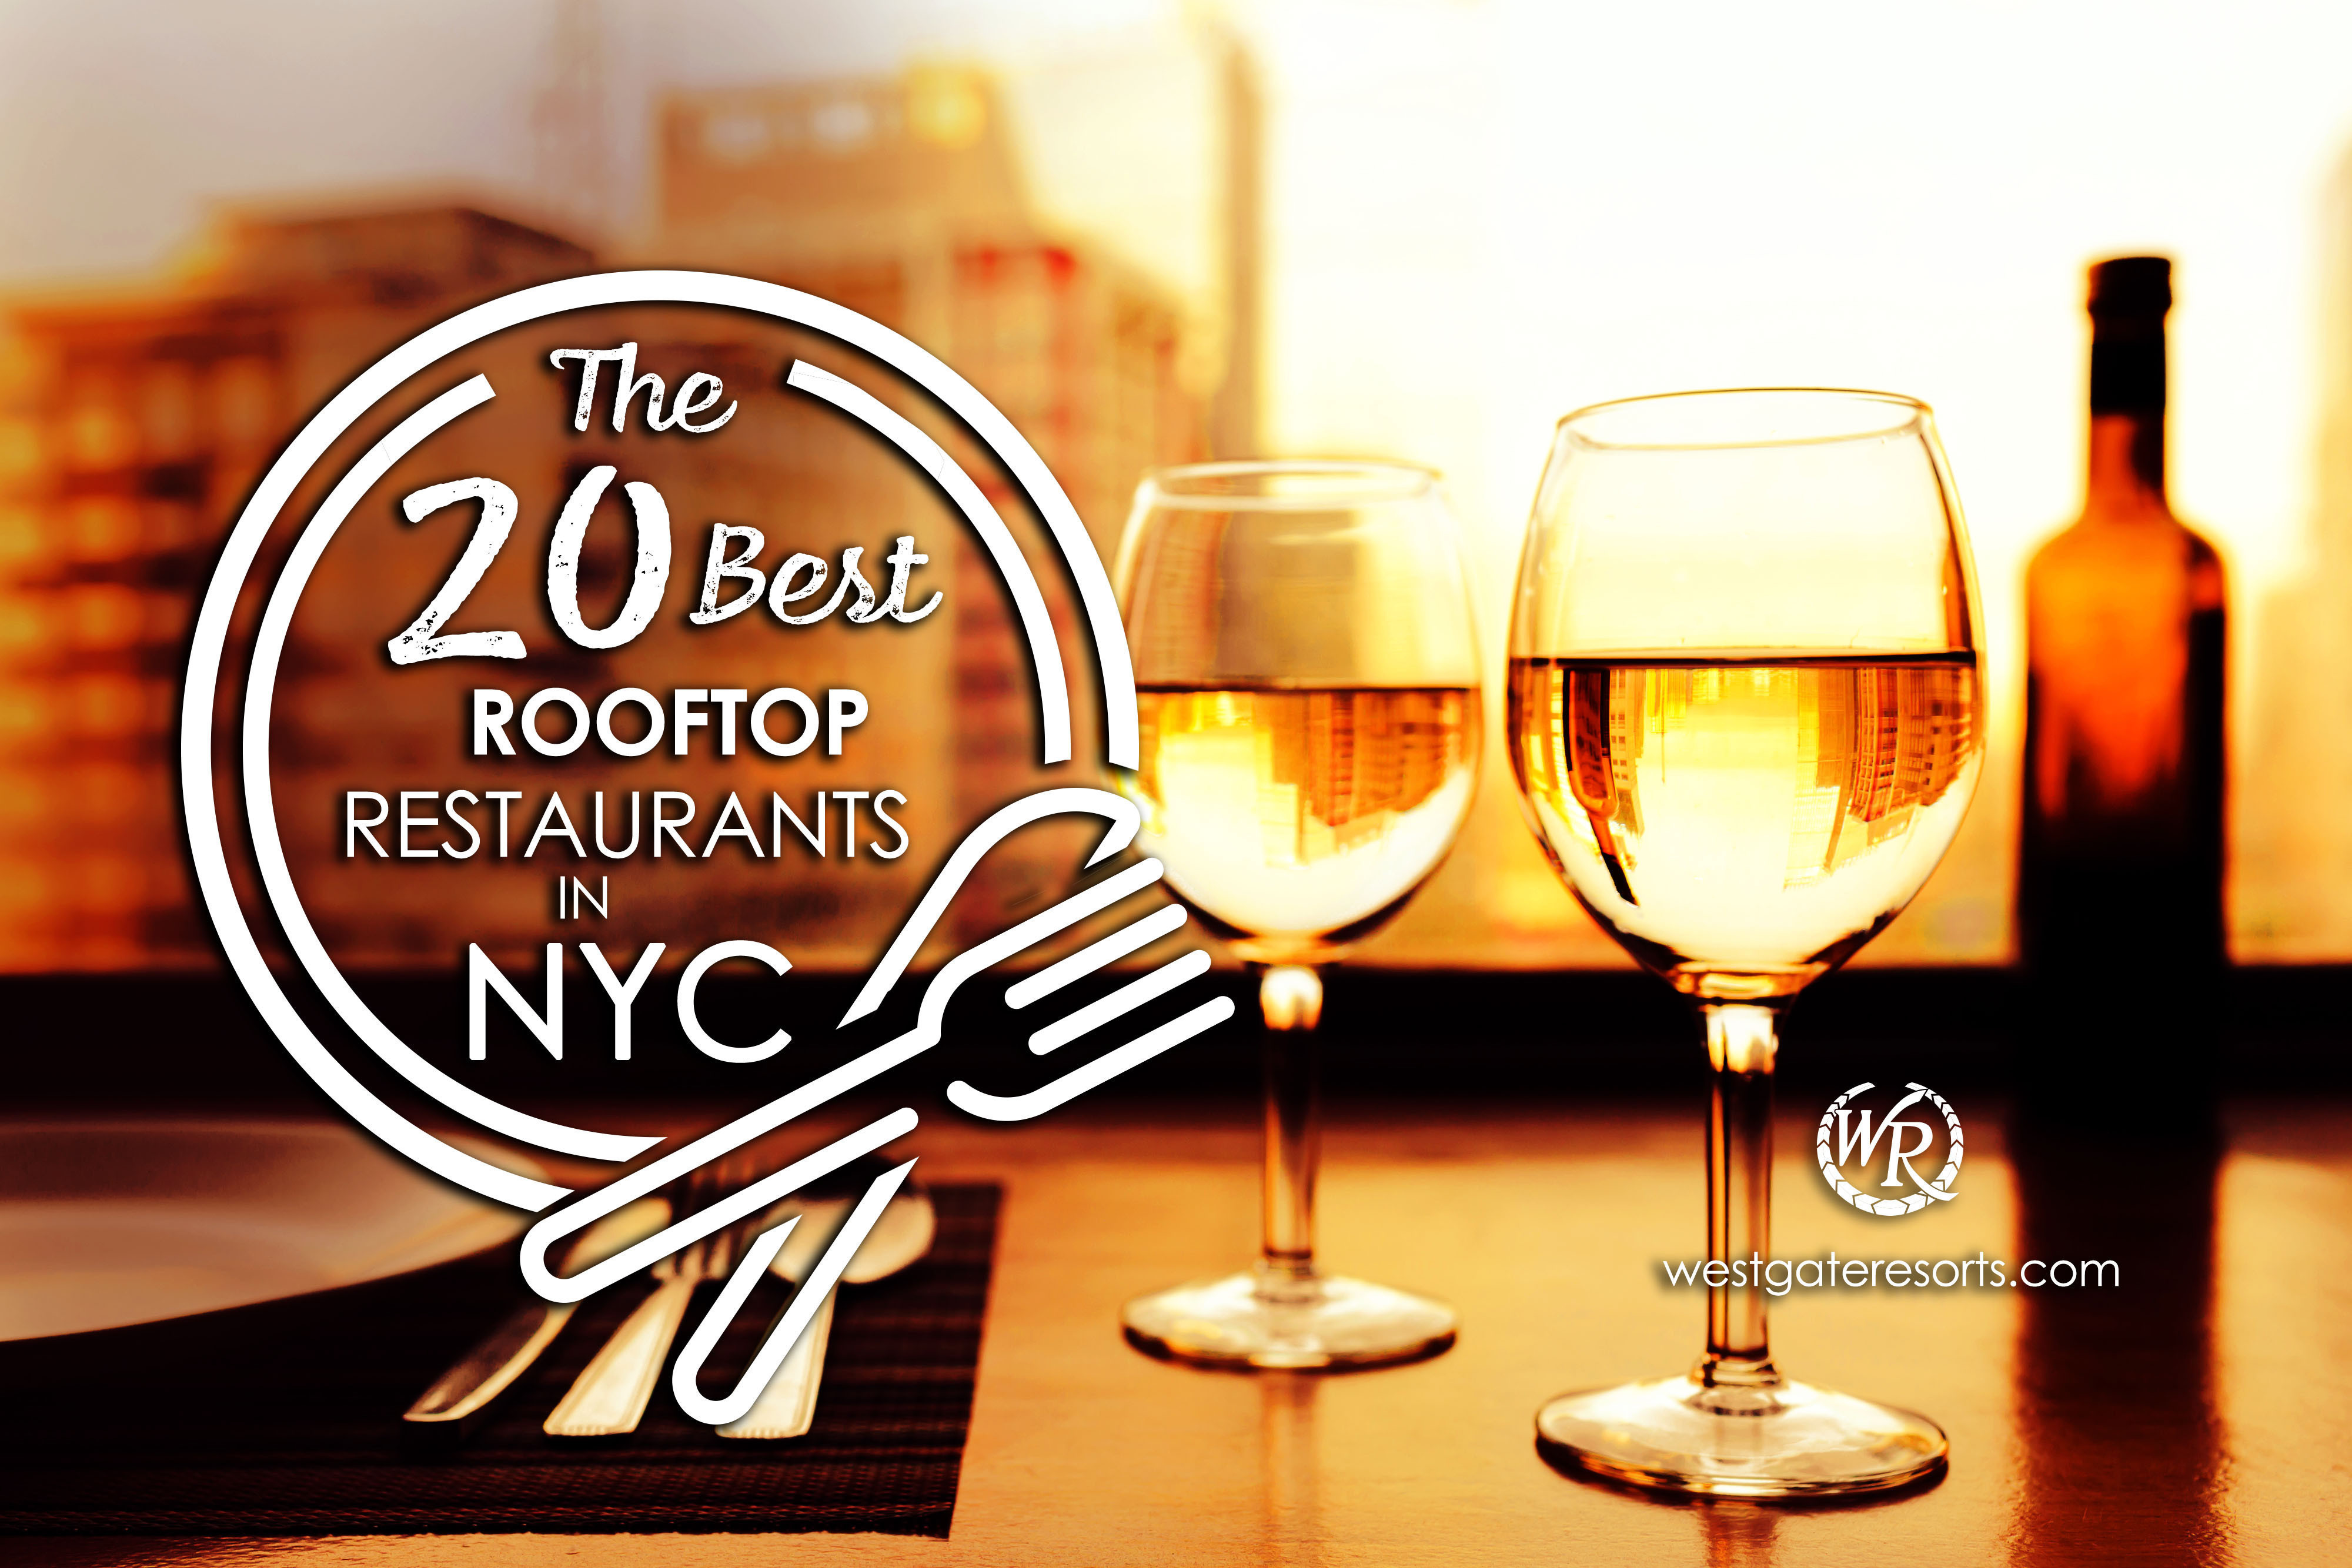 The 20 Best Rooftop Restaurants in NYC